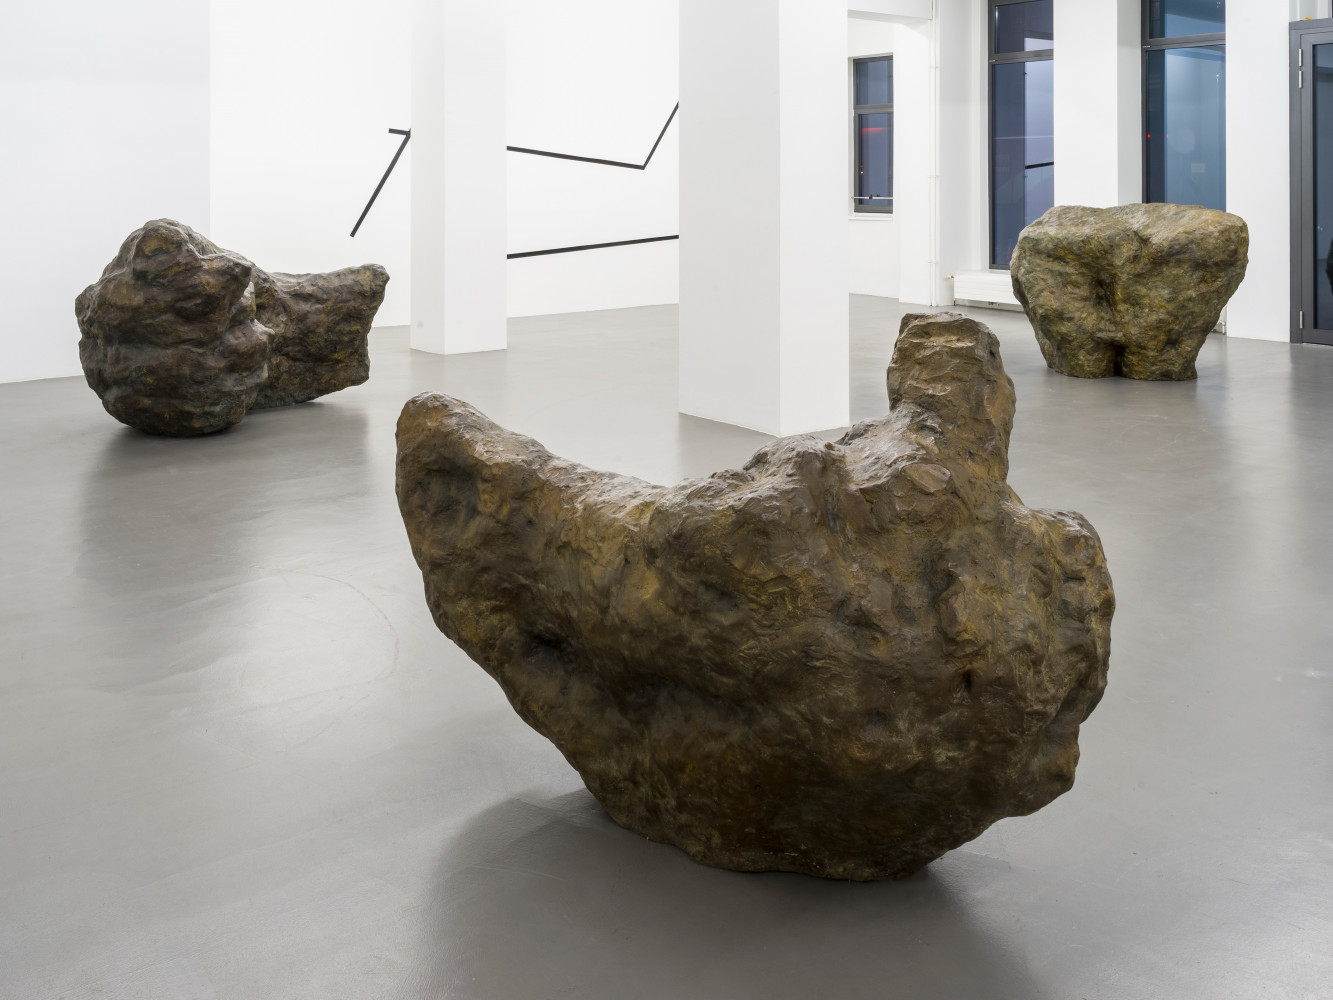 William Tucker, ‘William Tucker – Figure Advancing’, Installation view, Buchmann Galerie, 2020